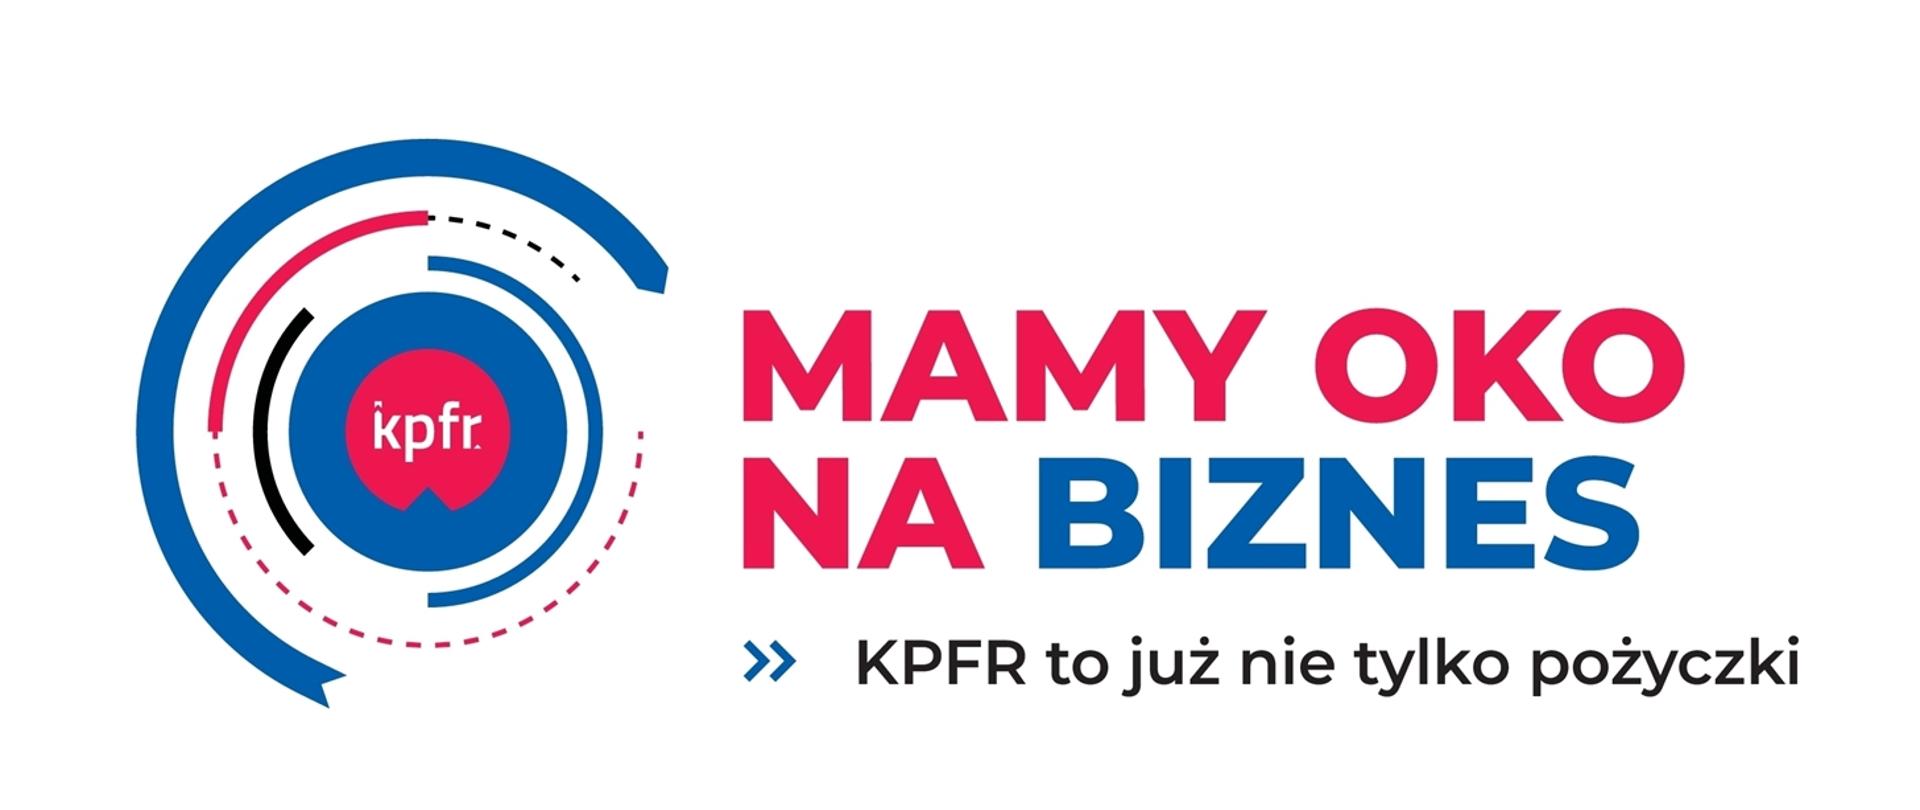 logotyp z napisem MAMY OKO NA BIZNES - KPFR to już nie tylko pożyczki